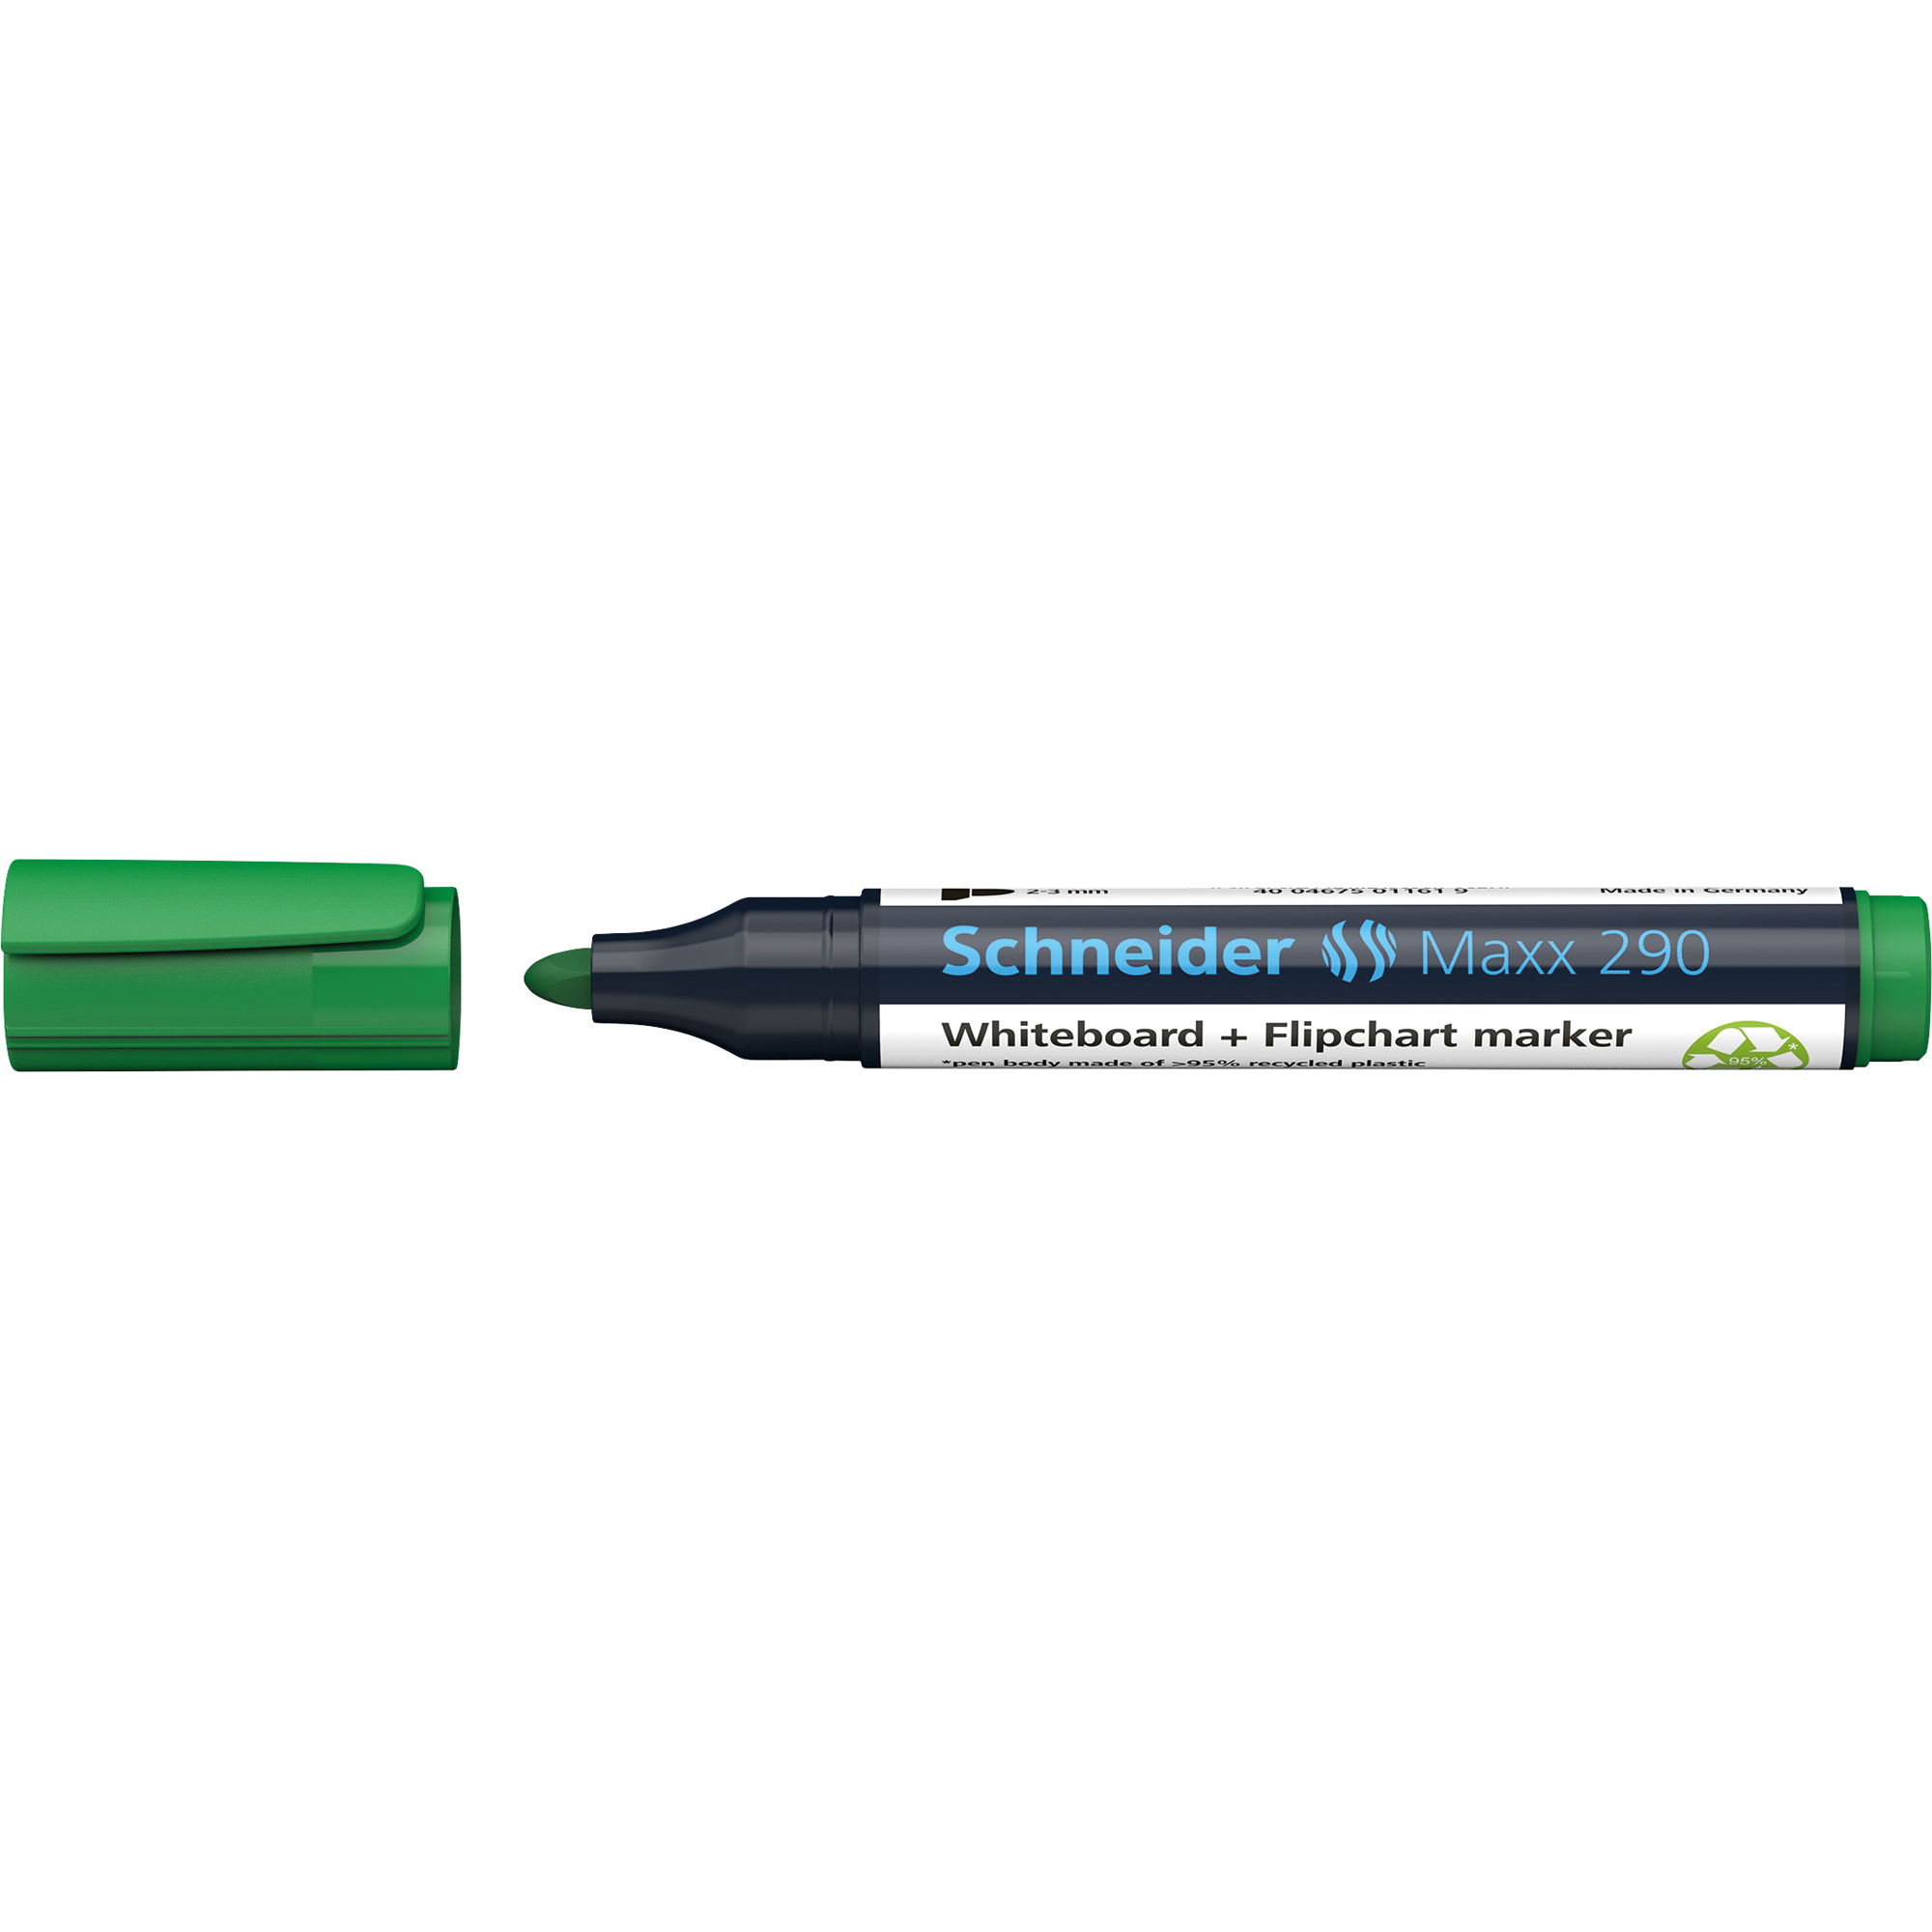 Schneider Whiteboardmarker Maxx 290 grün